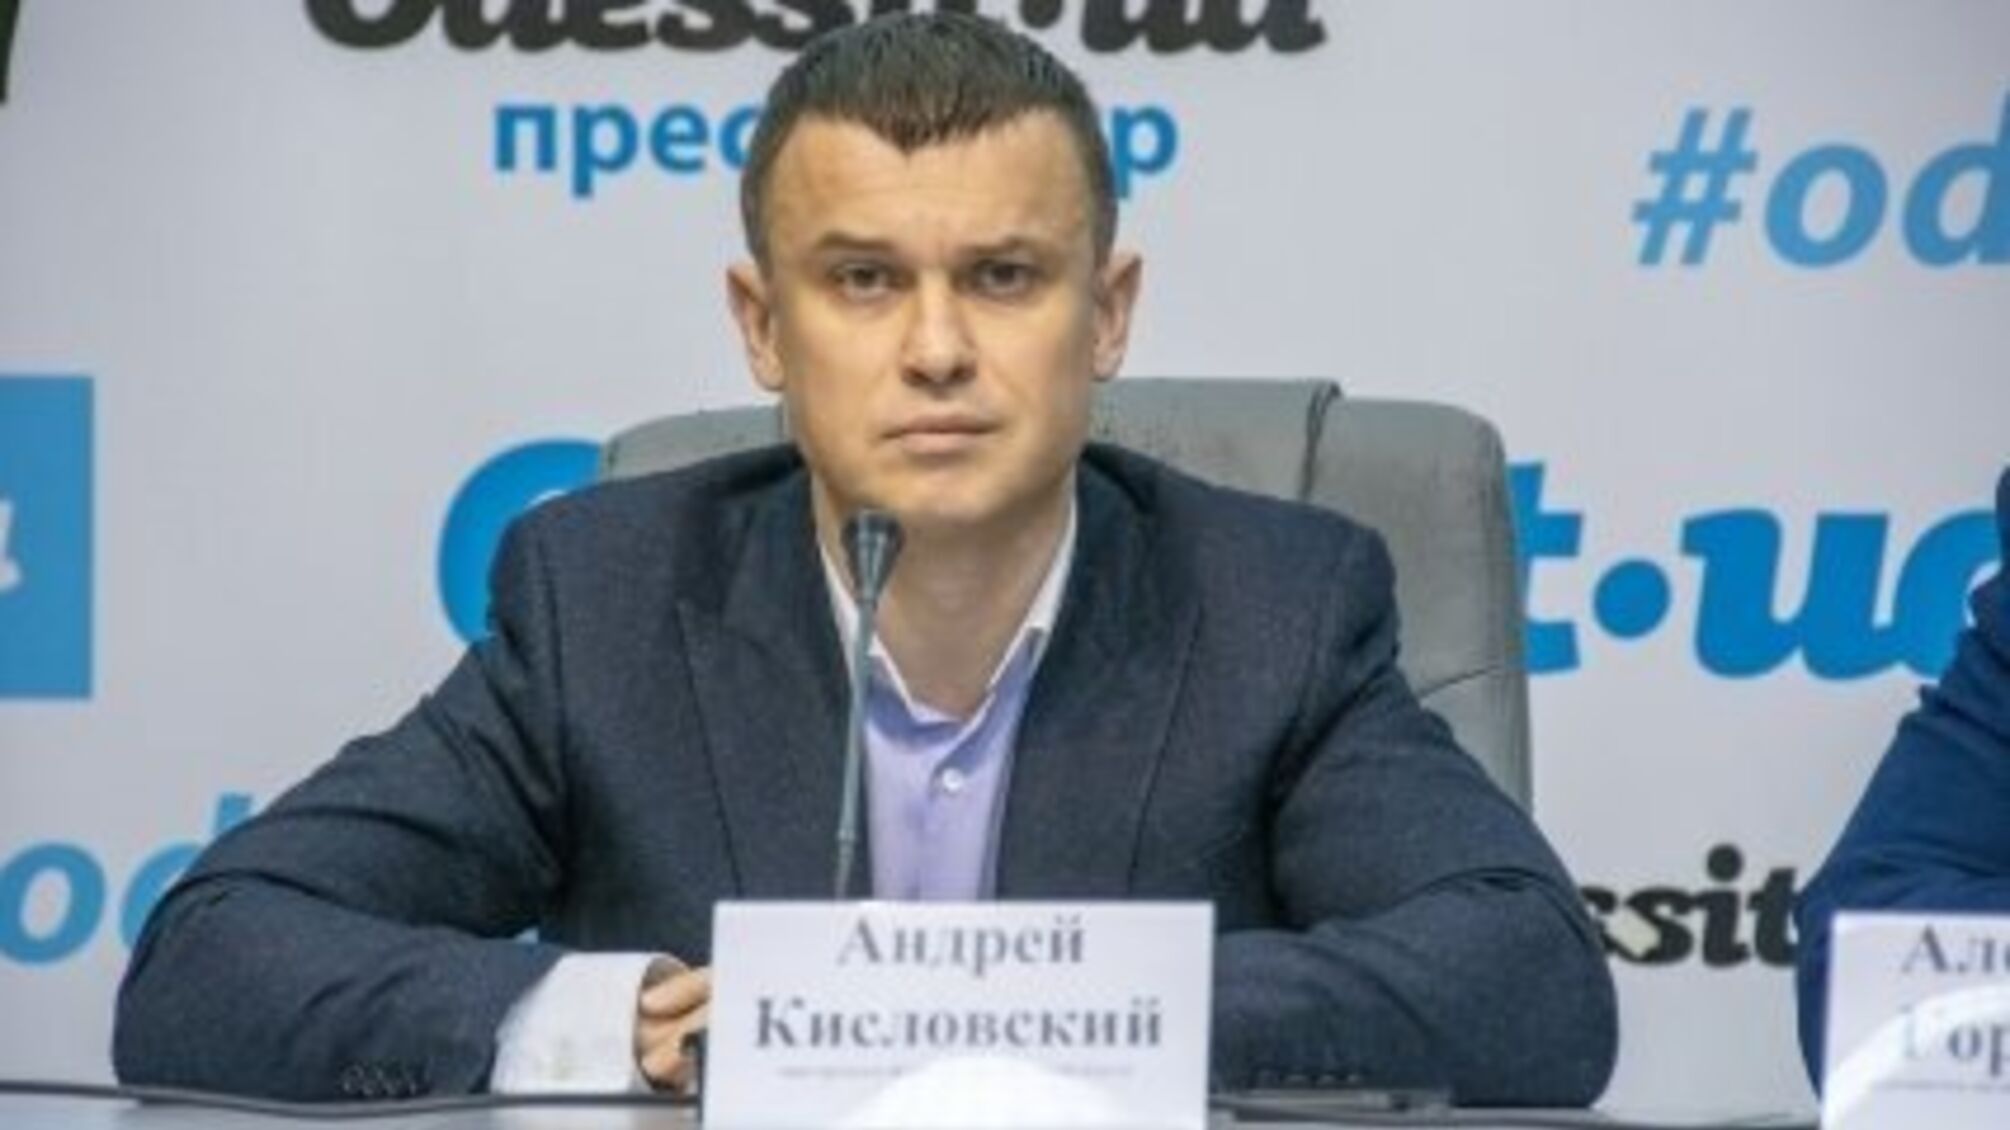 Курил в сессионном зале: депутат Одесского городского совета Андрей Кисловский снова оскандалился (видео)